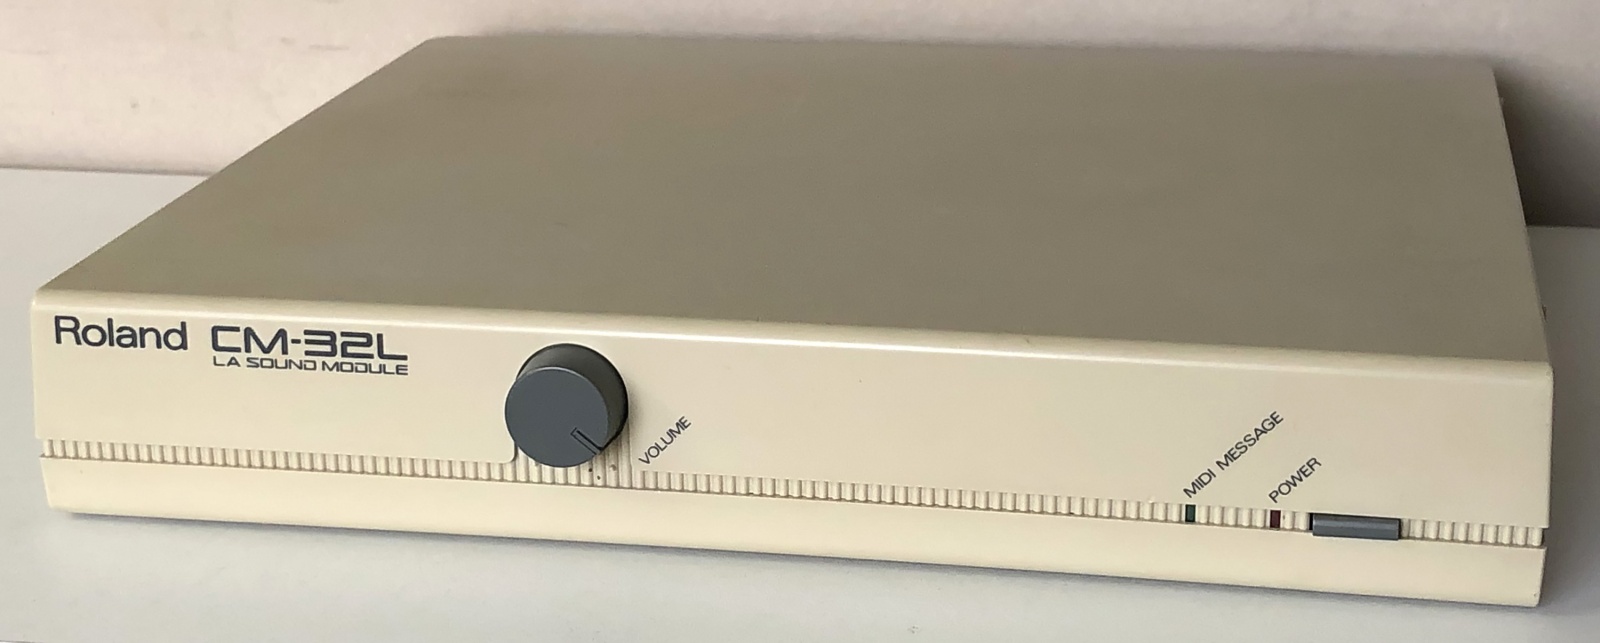 Древности: Roland MT-32, альтернативный звук для DOS-игр - 6